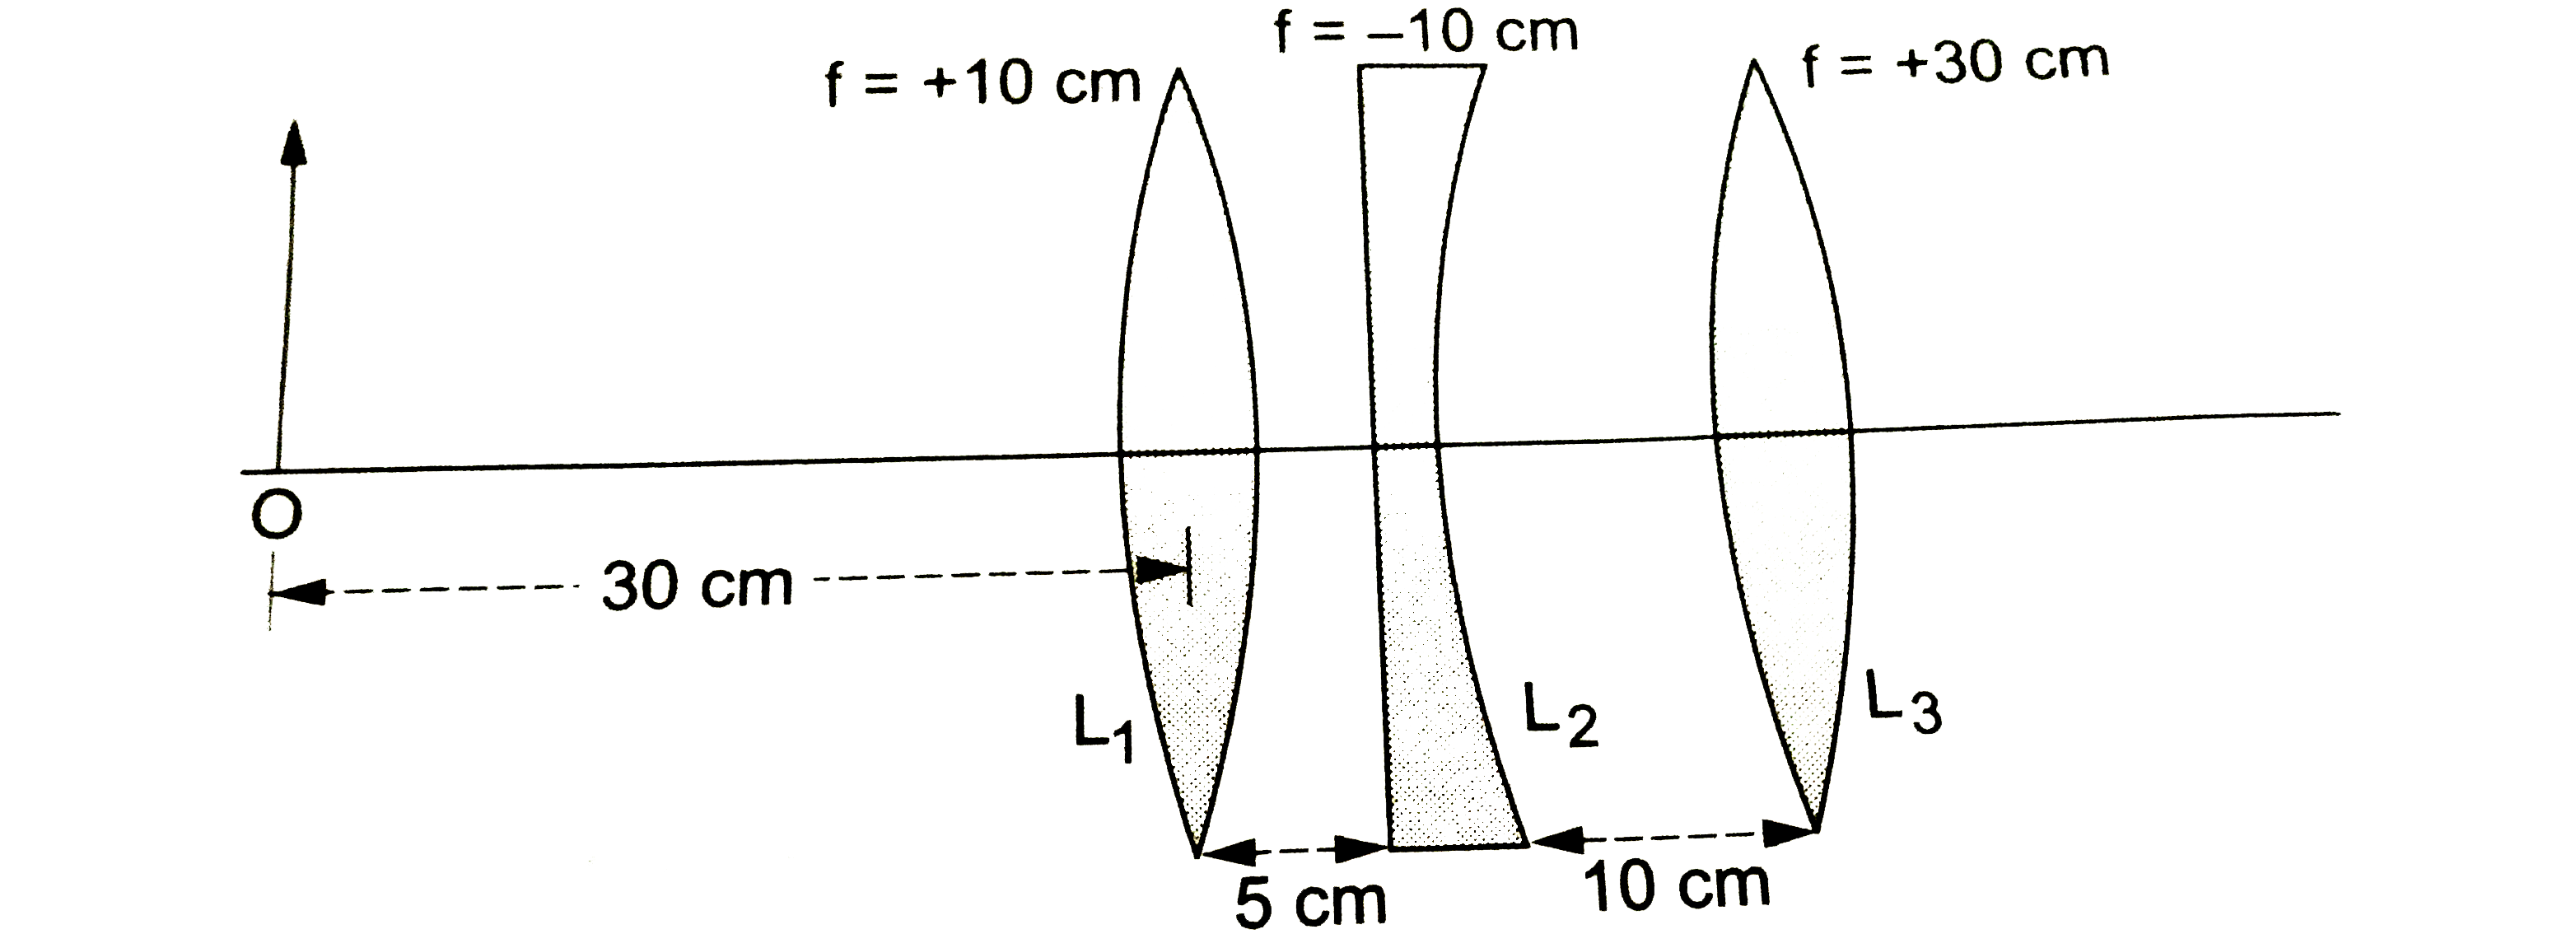 चित्र में तीन लेंसों का संयोजन (combination) दिखया गया है। बिंदु O पर स्थित वस्तु की स्थिति दिखाई गई है। इस वस्तु का प्रतिबिंब कहाँ बनेगा?